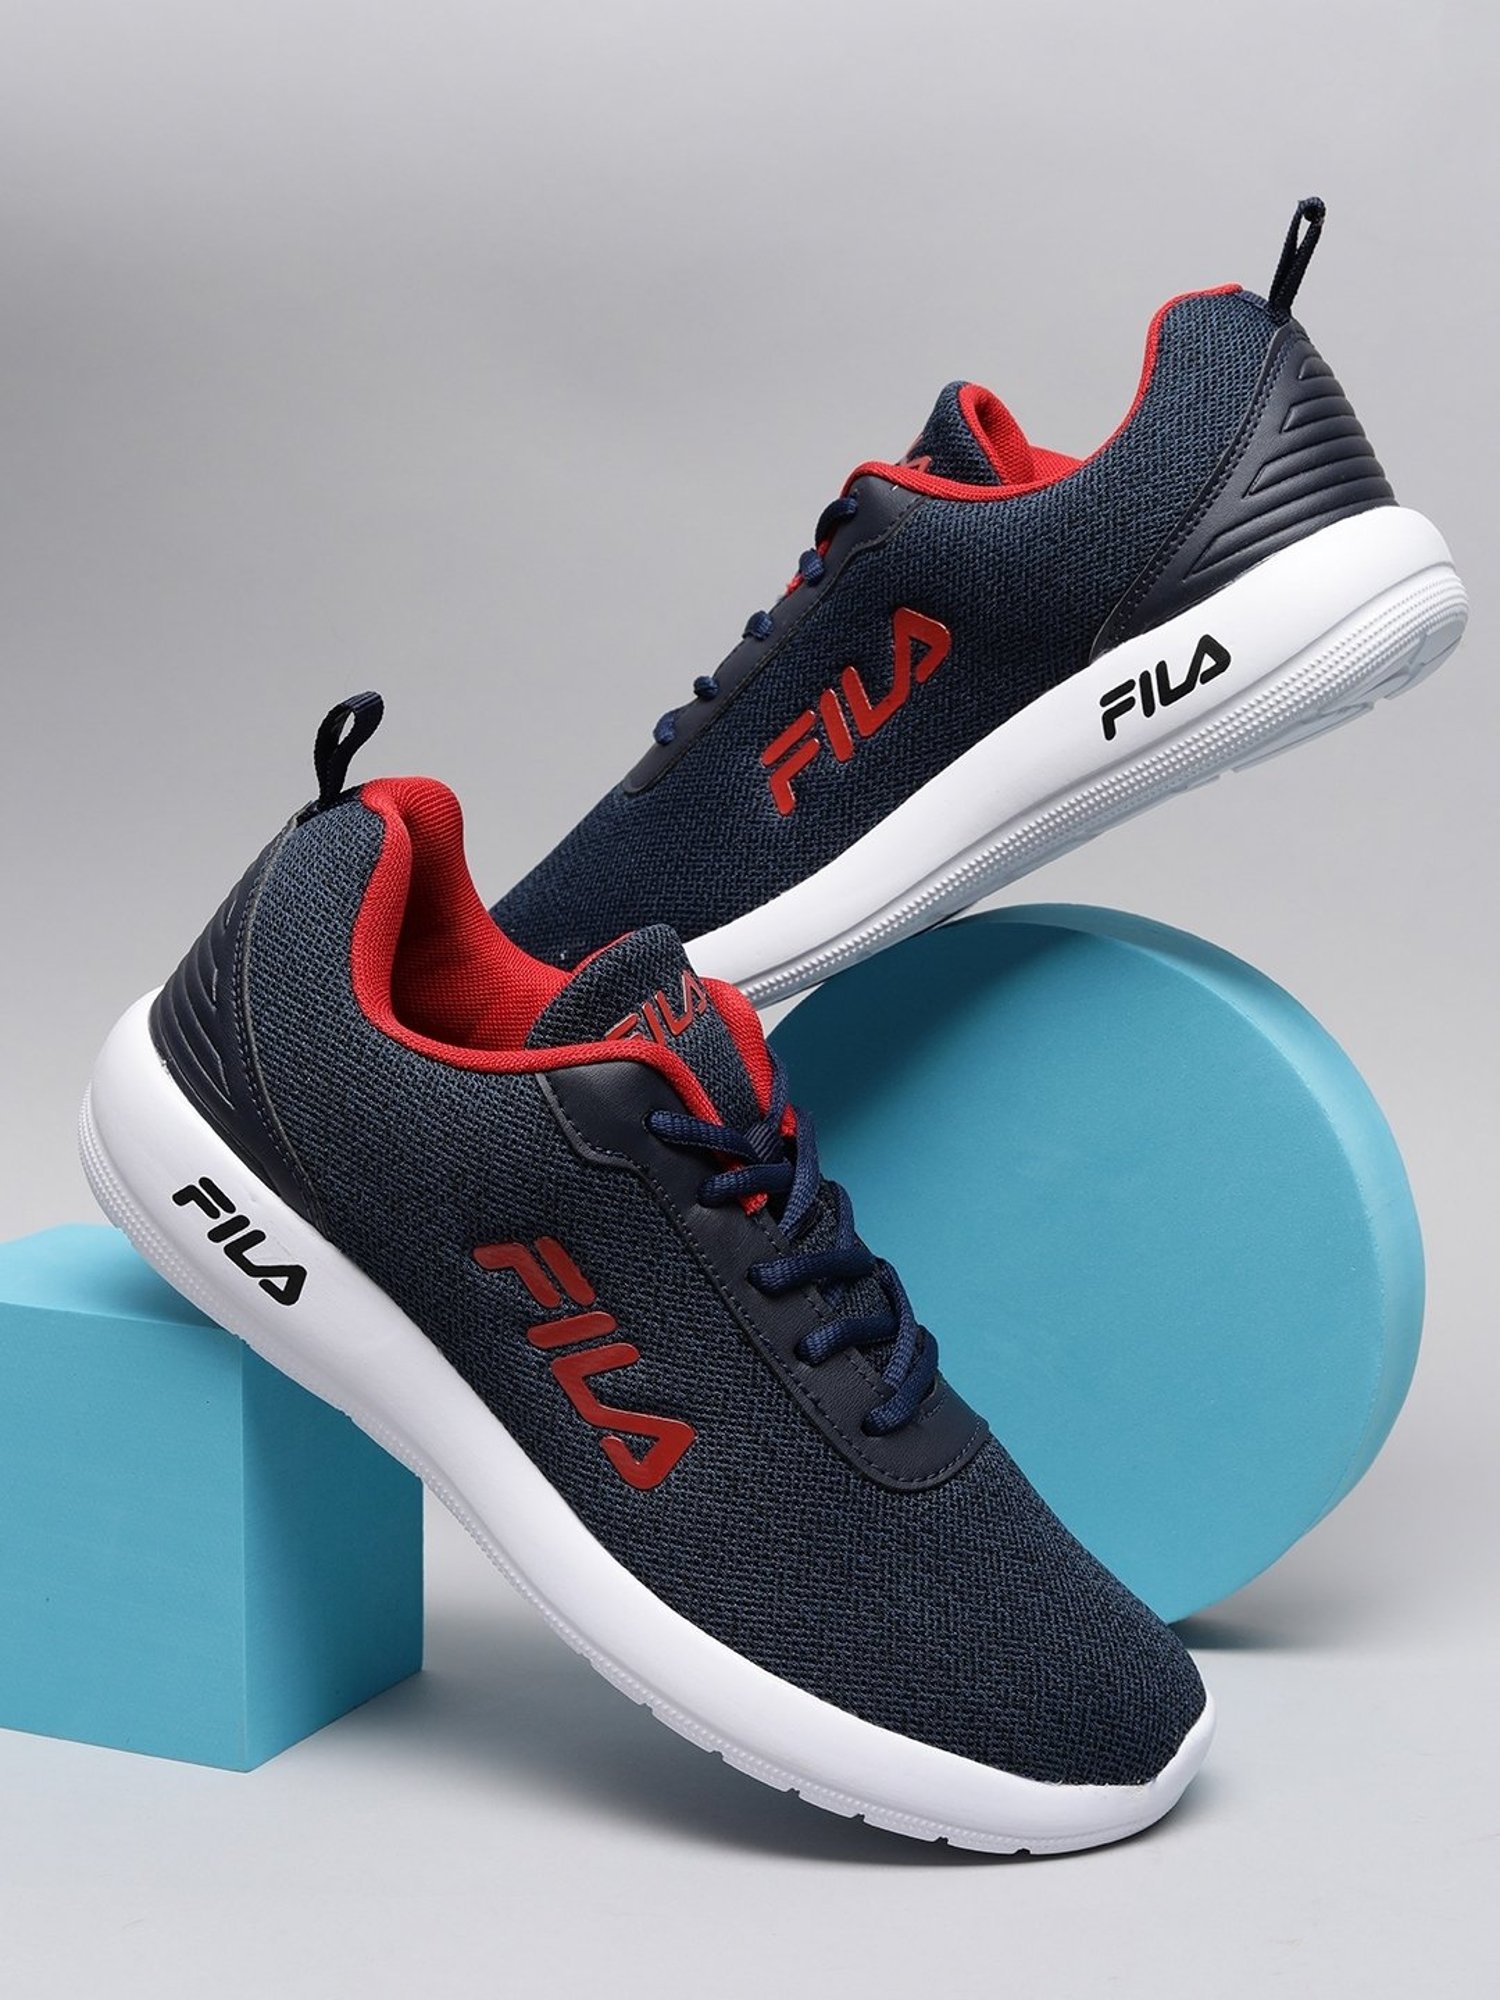 Buy Fila Men's TAKIYO Blue Running Shoes for Men at Best Price @ CLiQ